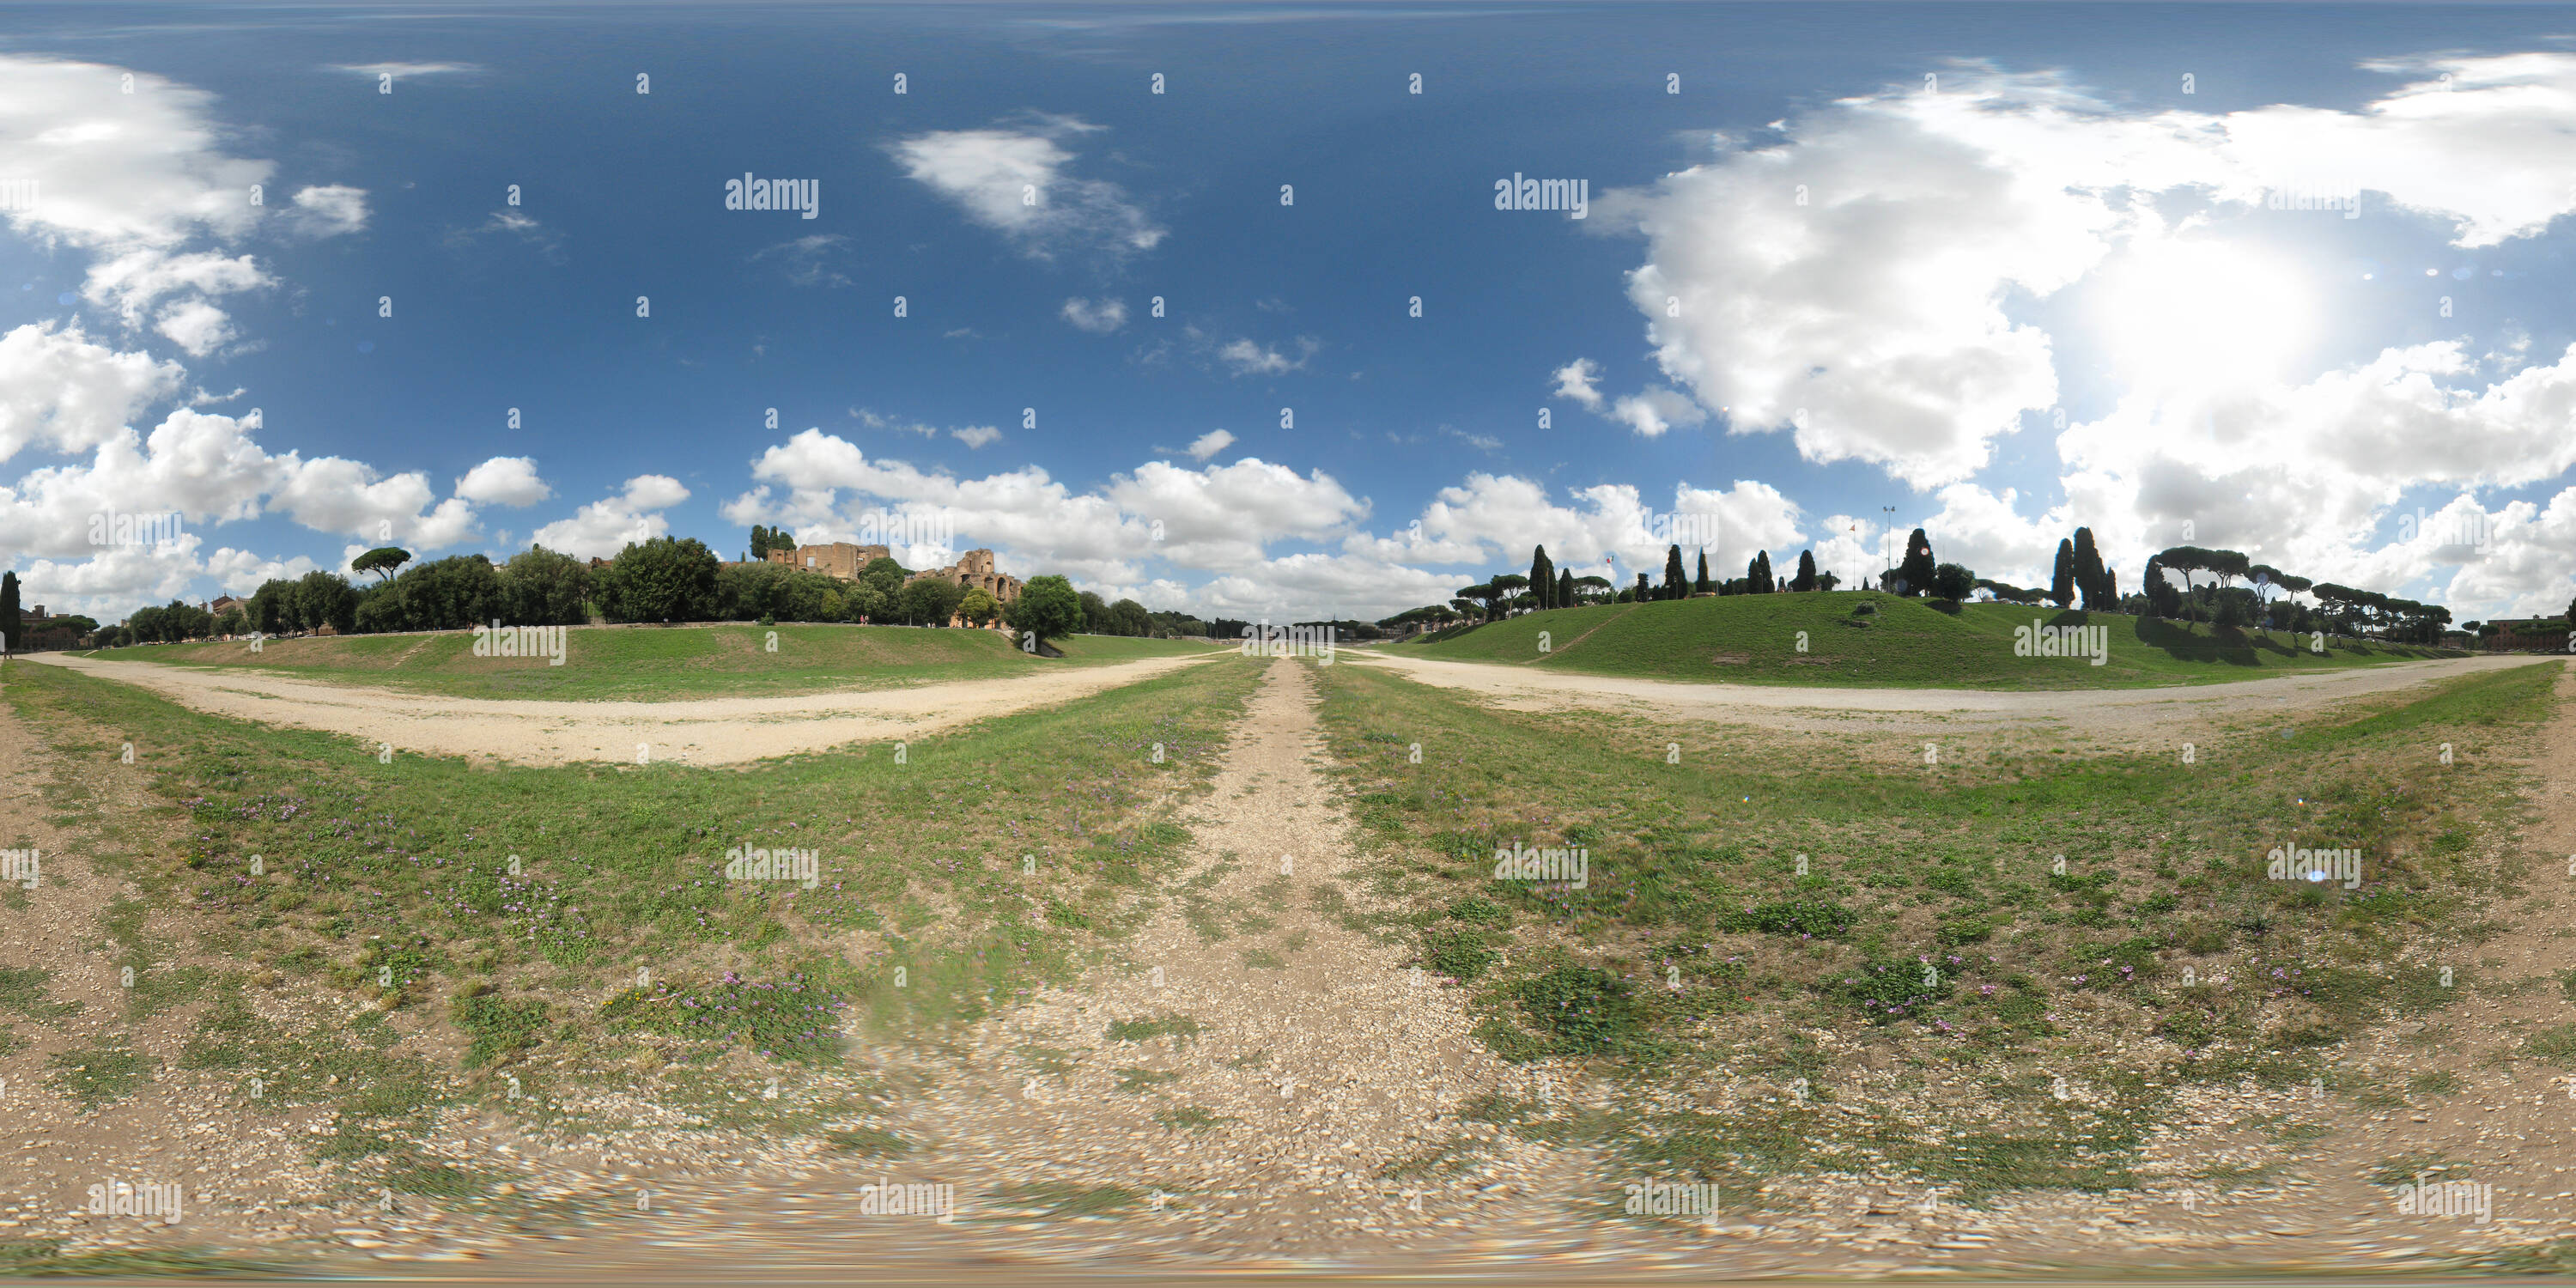 Vue panoramique à 360° de Rome - Circus Maximus